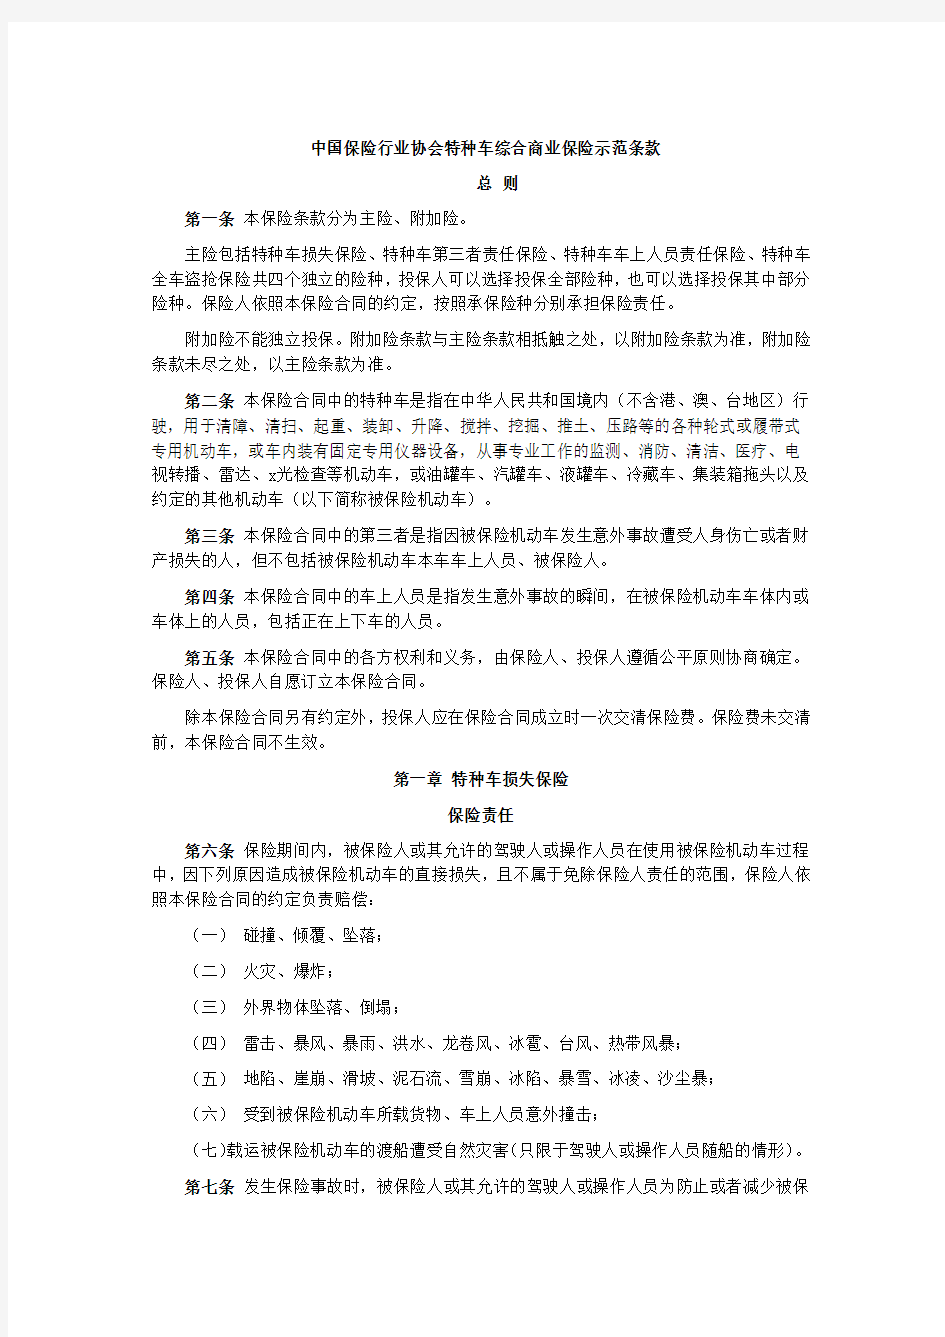 中国保险行业协会特种车综合商业保险示范条款(2014版)